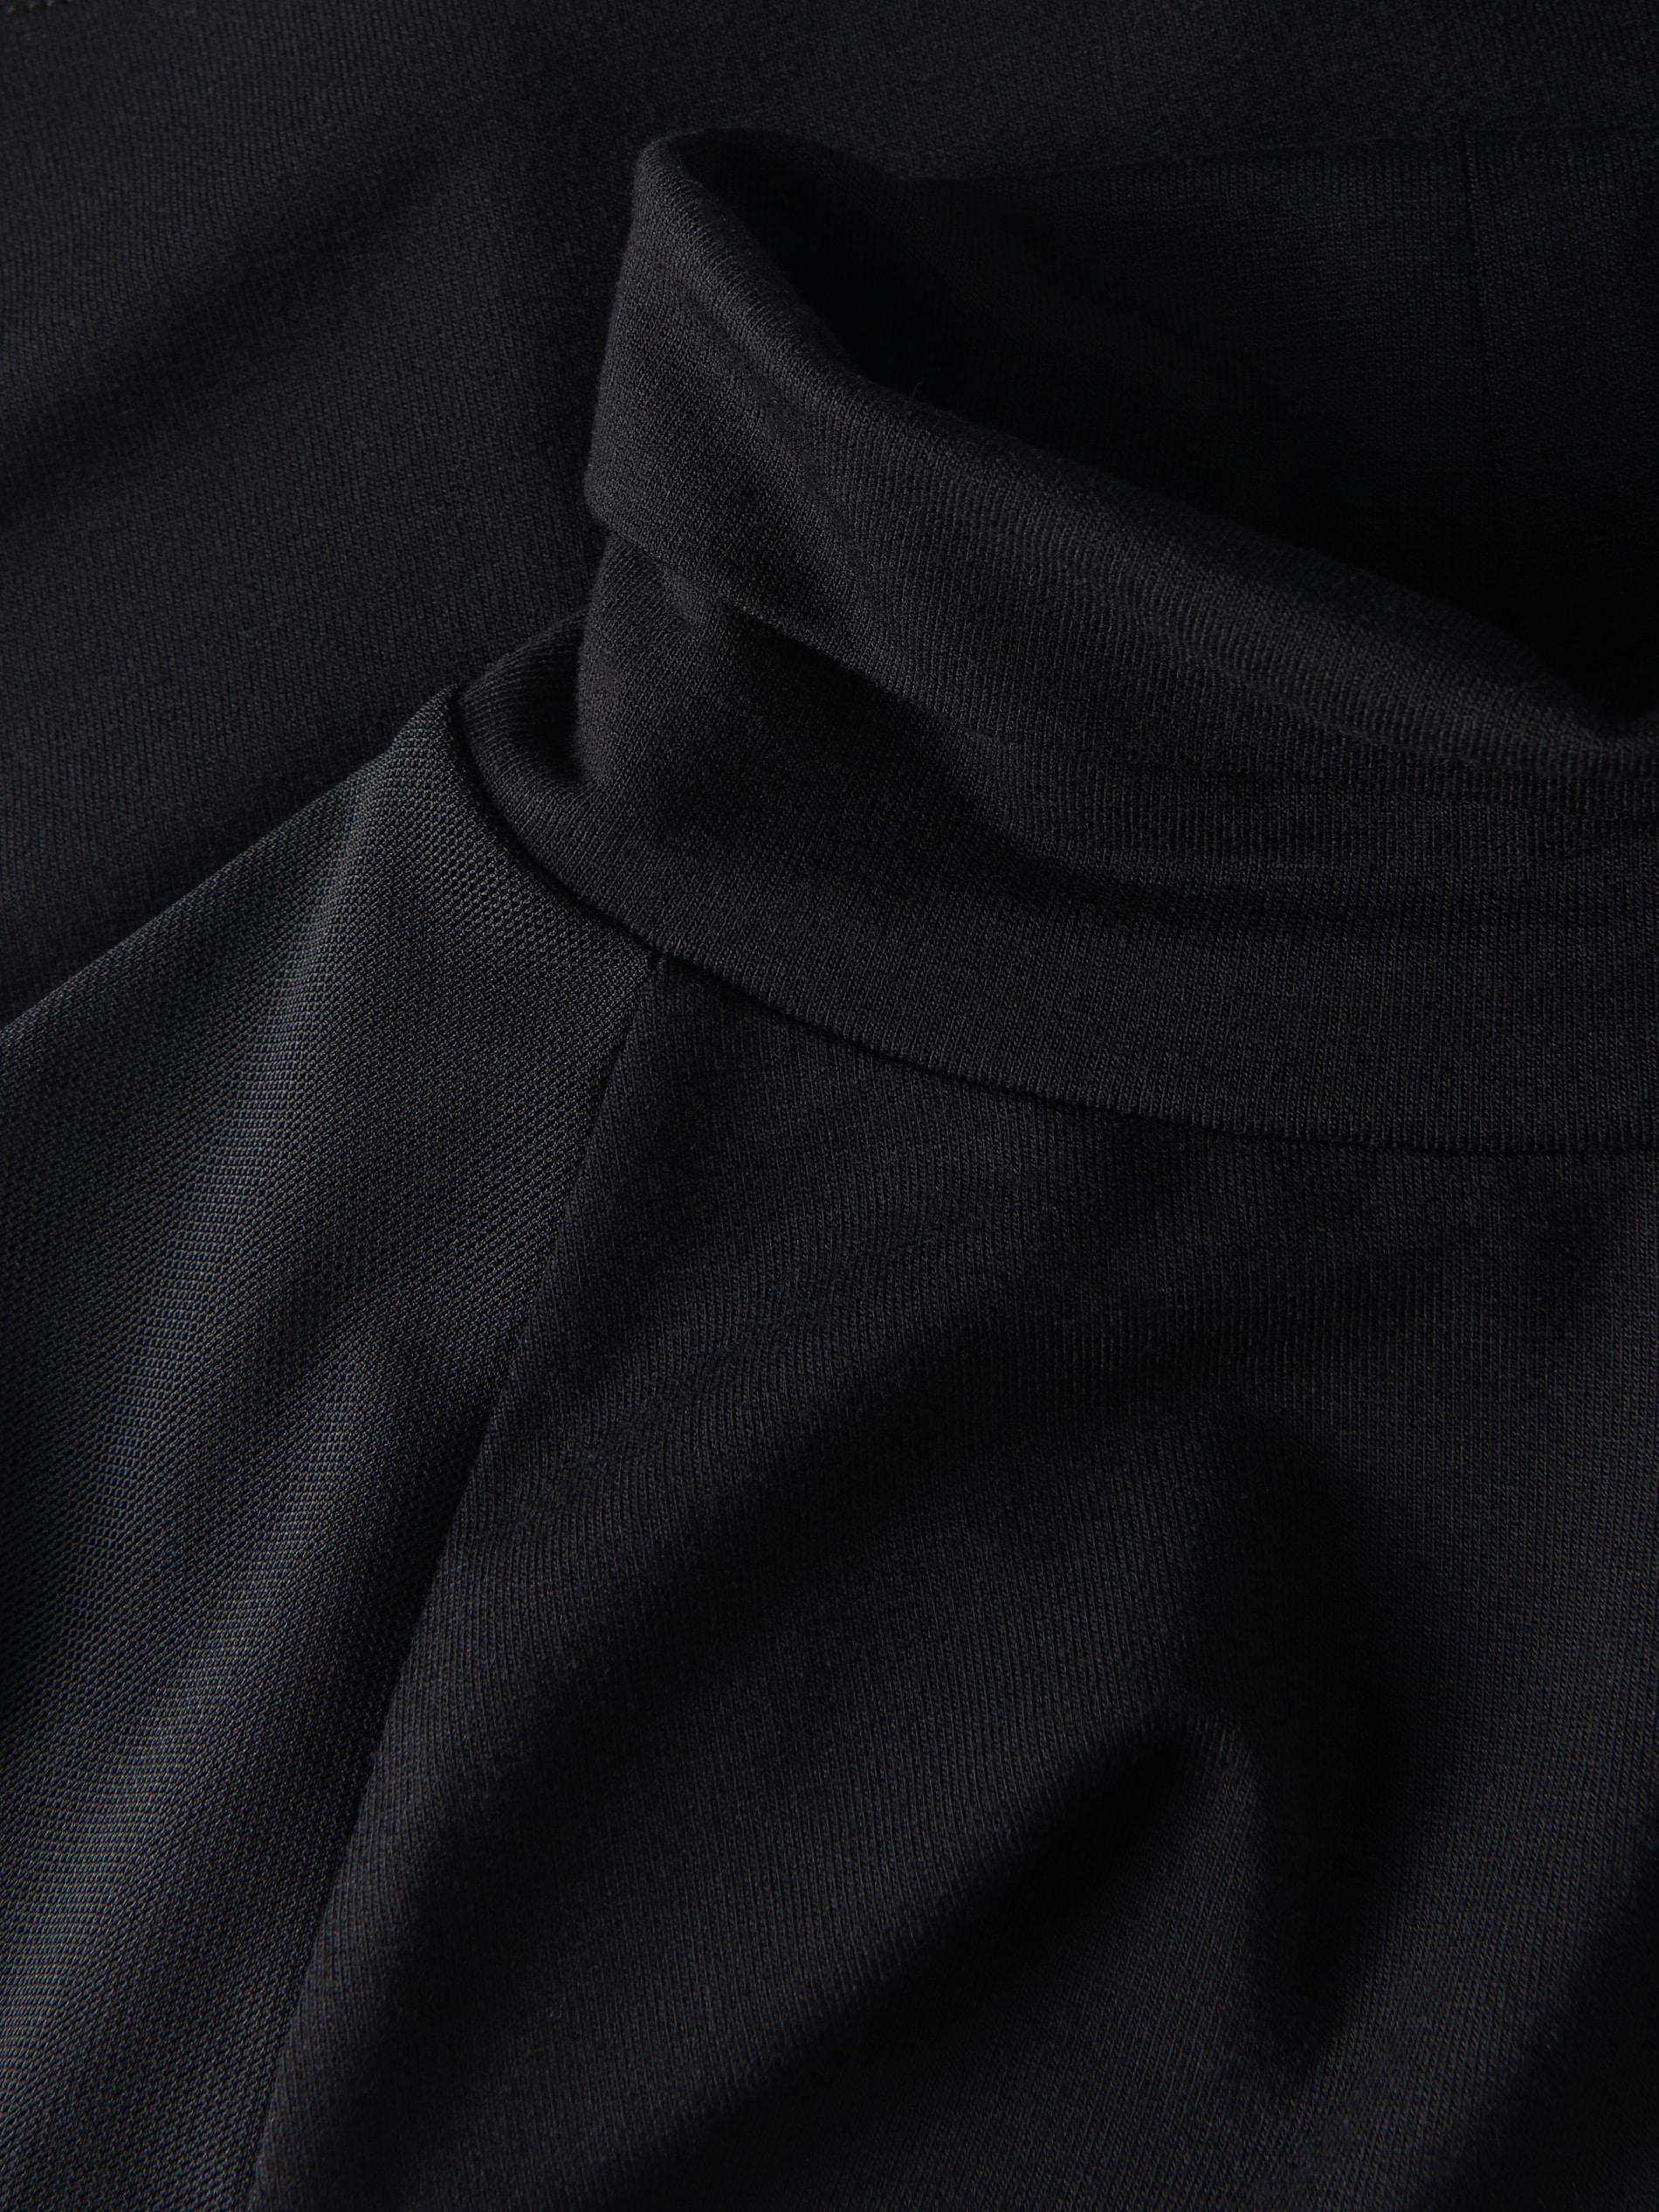 Reserved - Black Long Sleeve Blouse, Kids Girls